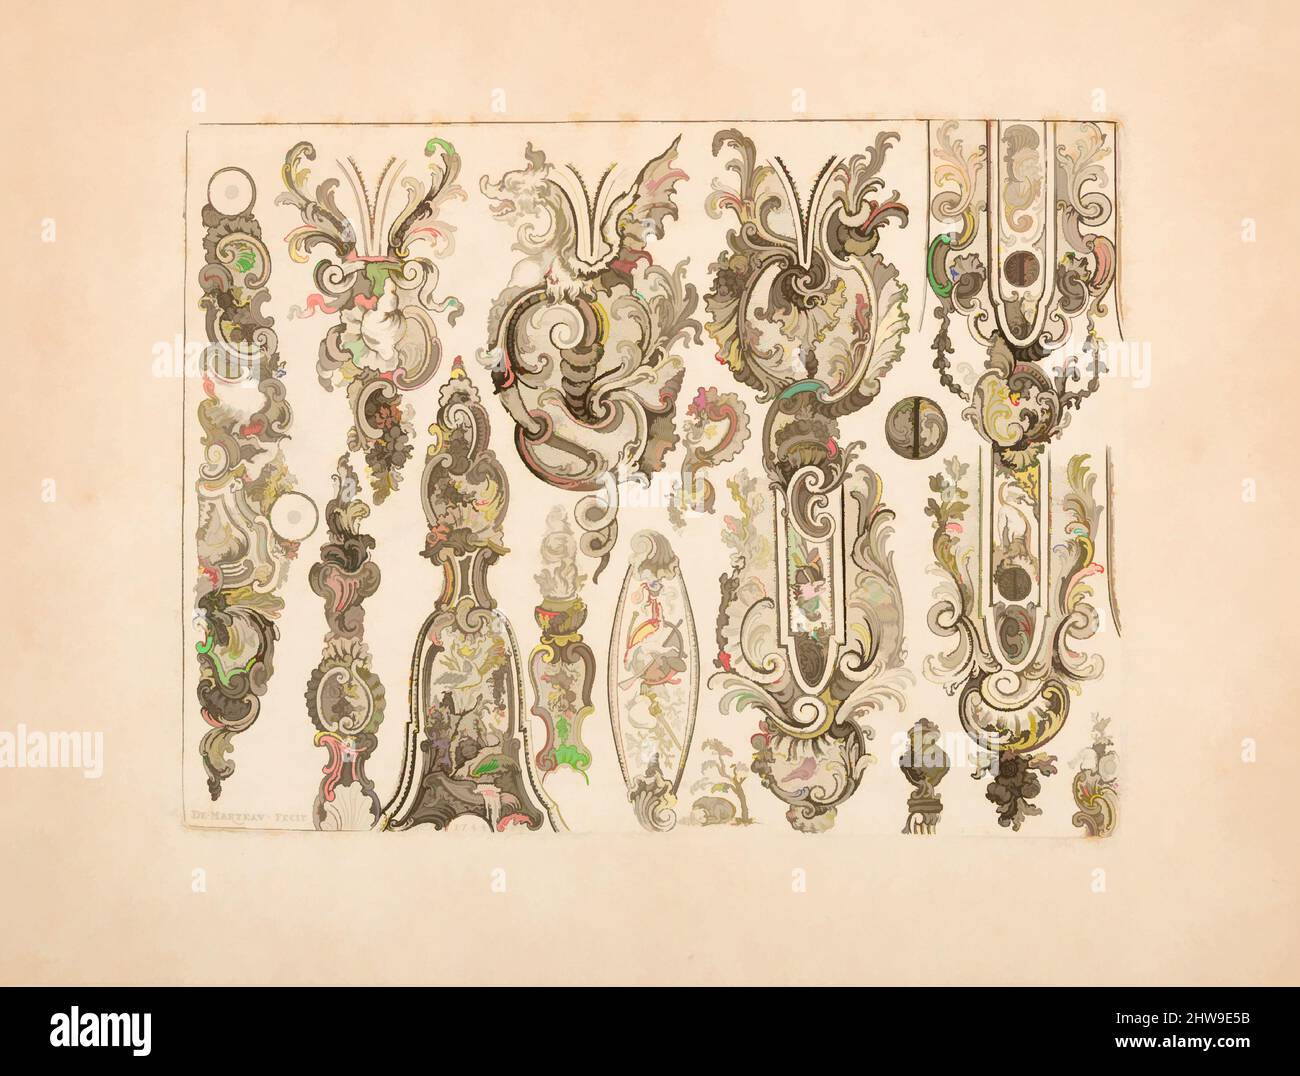 Art Inspired by Plate Ten di Nouveavx Desseins D’Arquebvseries, datato 1744, francese, incisione, foglio: 11 7/8 x 9 1/8 pollici. (30,16 x 23,17 cm); piastra: 8 1/2 x 6 3/8 poll. (21,59 x 16,19 cm), opere su incisioni su carta, il libro del modello a cui appartiene questa lastra è stato tra i più, opere classiche modernizzate da Artotop con un tuffo di modernità. Forme, colore e valore, impatto visivo accattivante sulle emozioni artistiche attraverso la libertà delle opere d'arte in modo contemporaneo. Un messaggio senza tempo che persegue una nuova direzione selvaggiamente creativa. Artisti che si rivolgono al supporto digitale e creano l'NFT Artotop Foto Stock